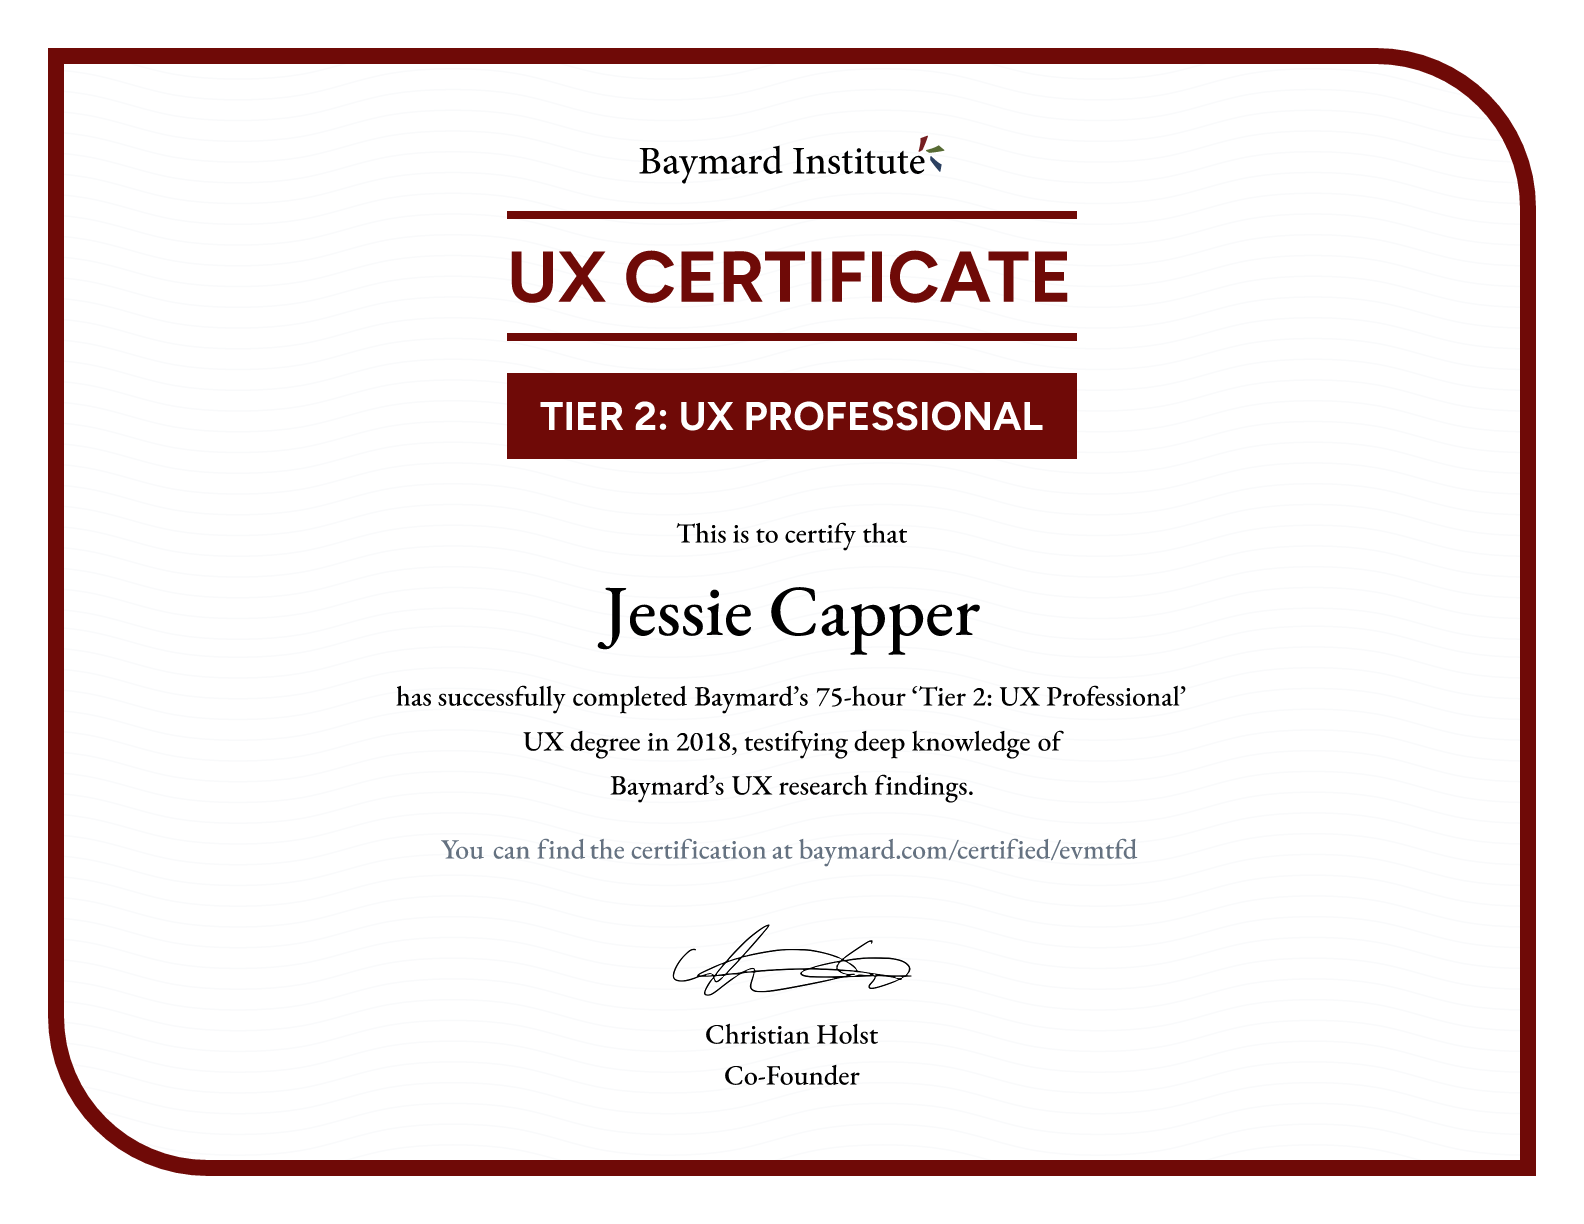 Jessie Capper’s certificate